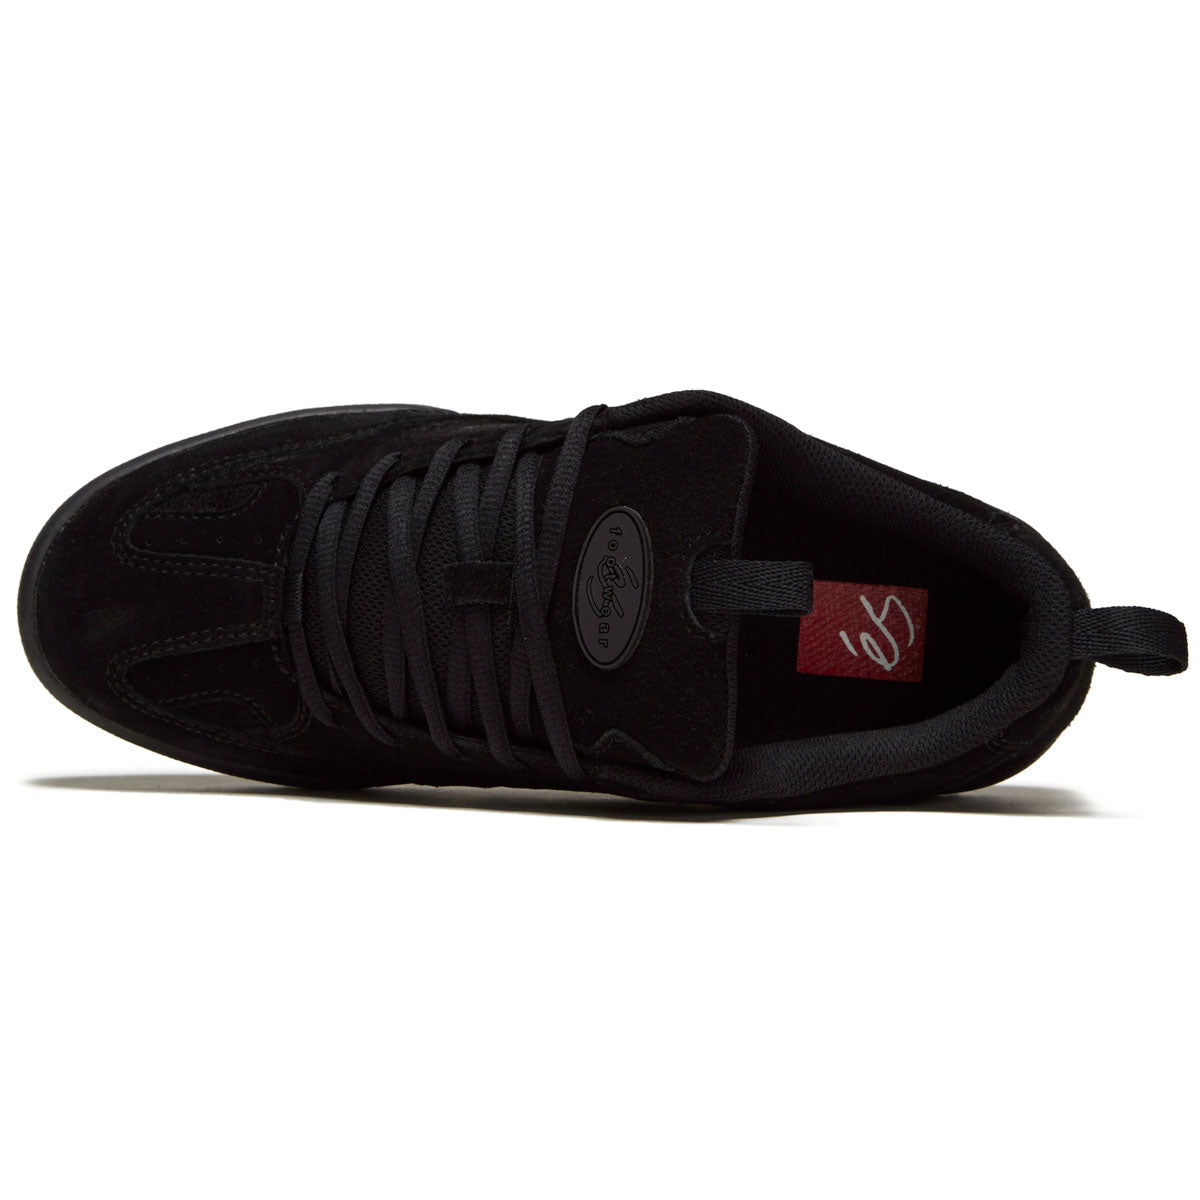 eS Quattro Shoes - Black/Black image 3